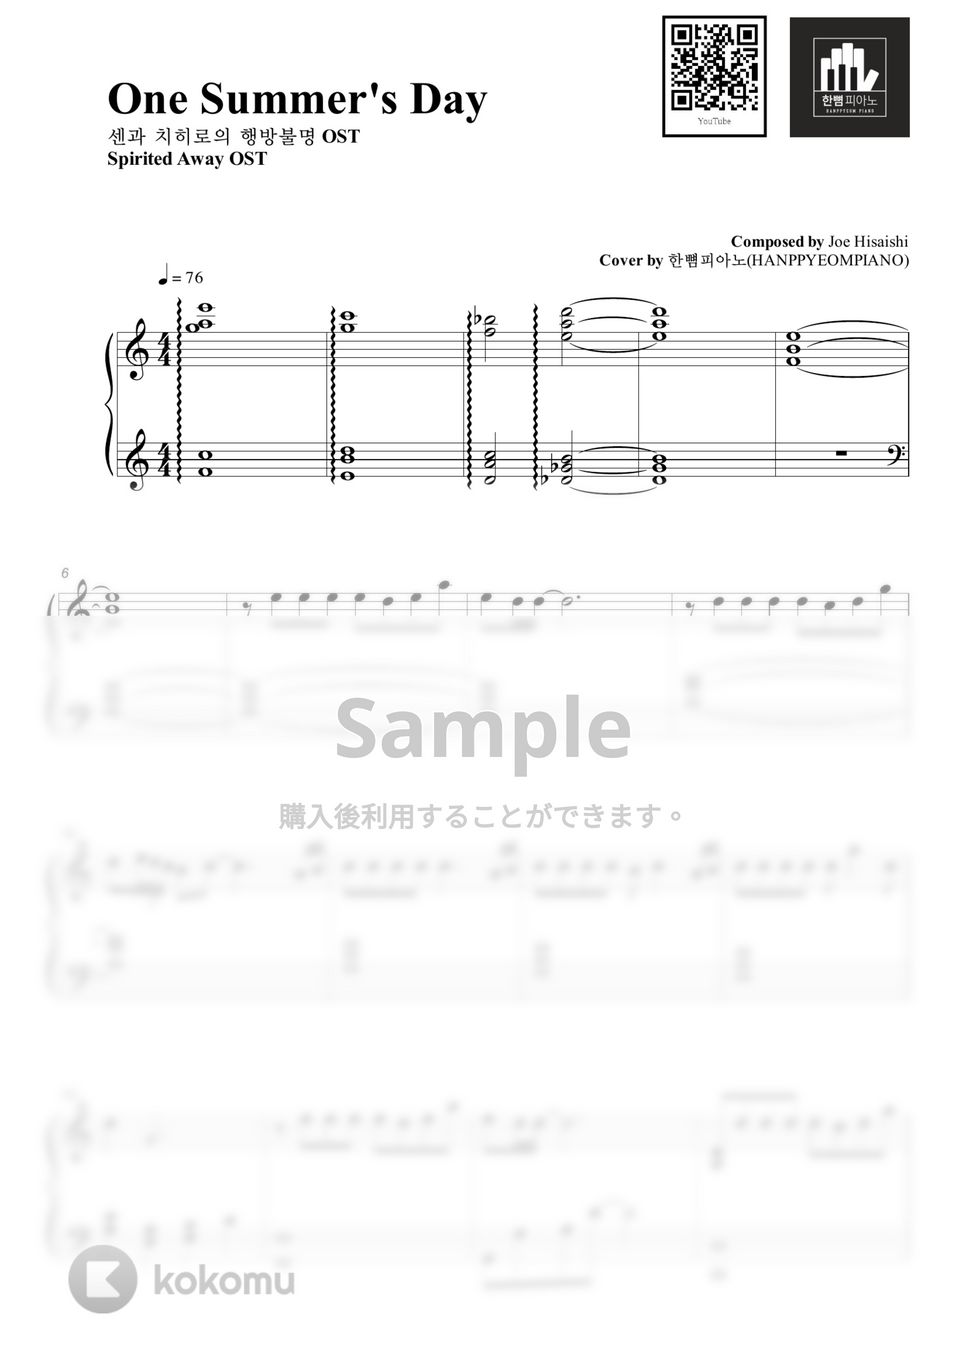 Joe Hisaishi - One Summer's Day (PIANO COVER) by HANPPYEOMPIANO